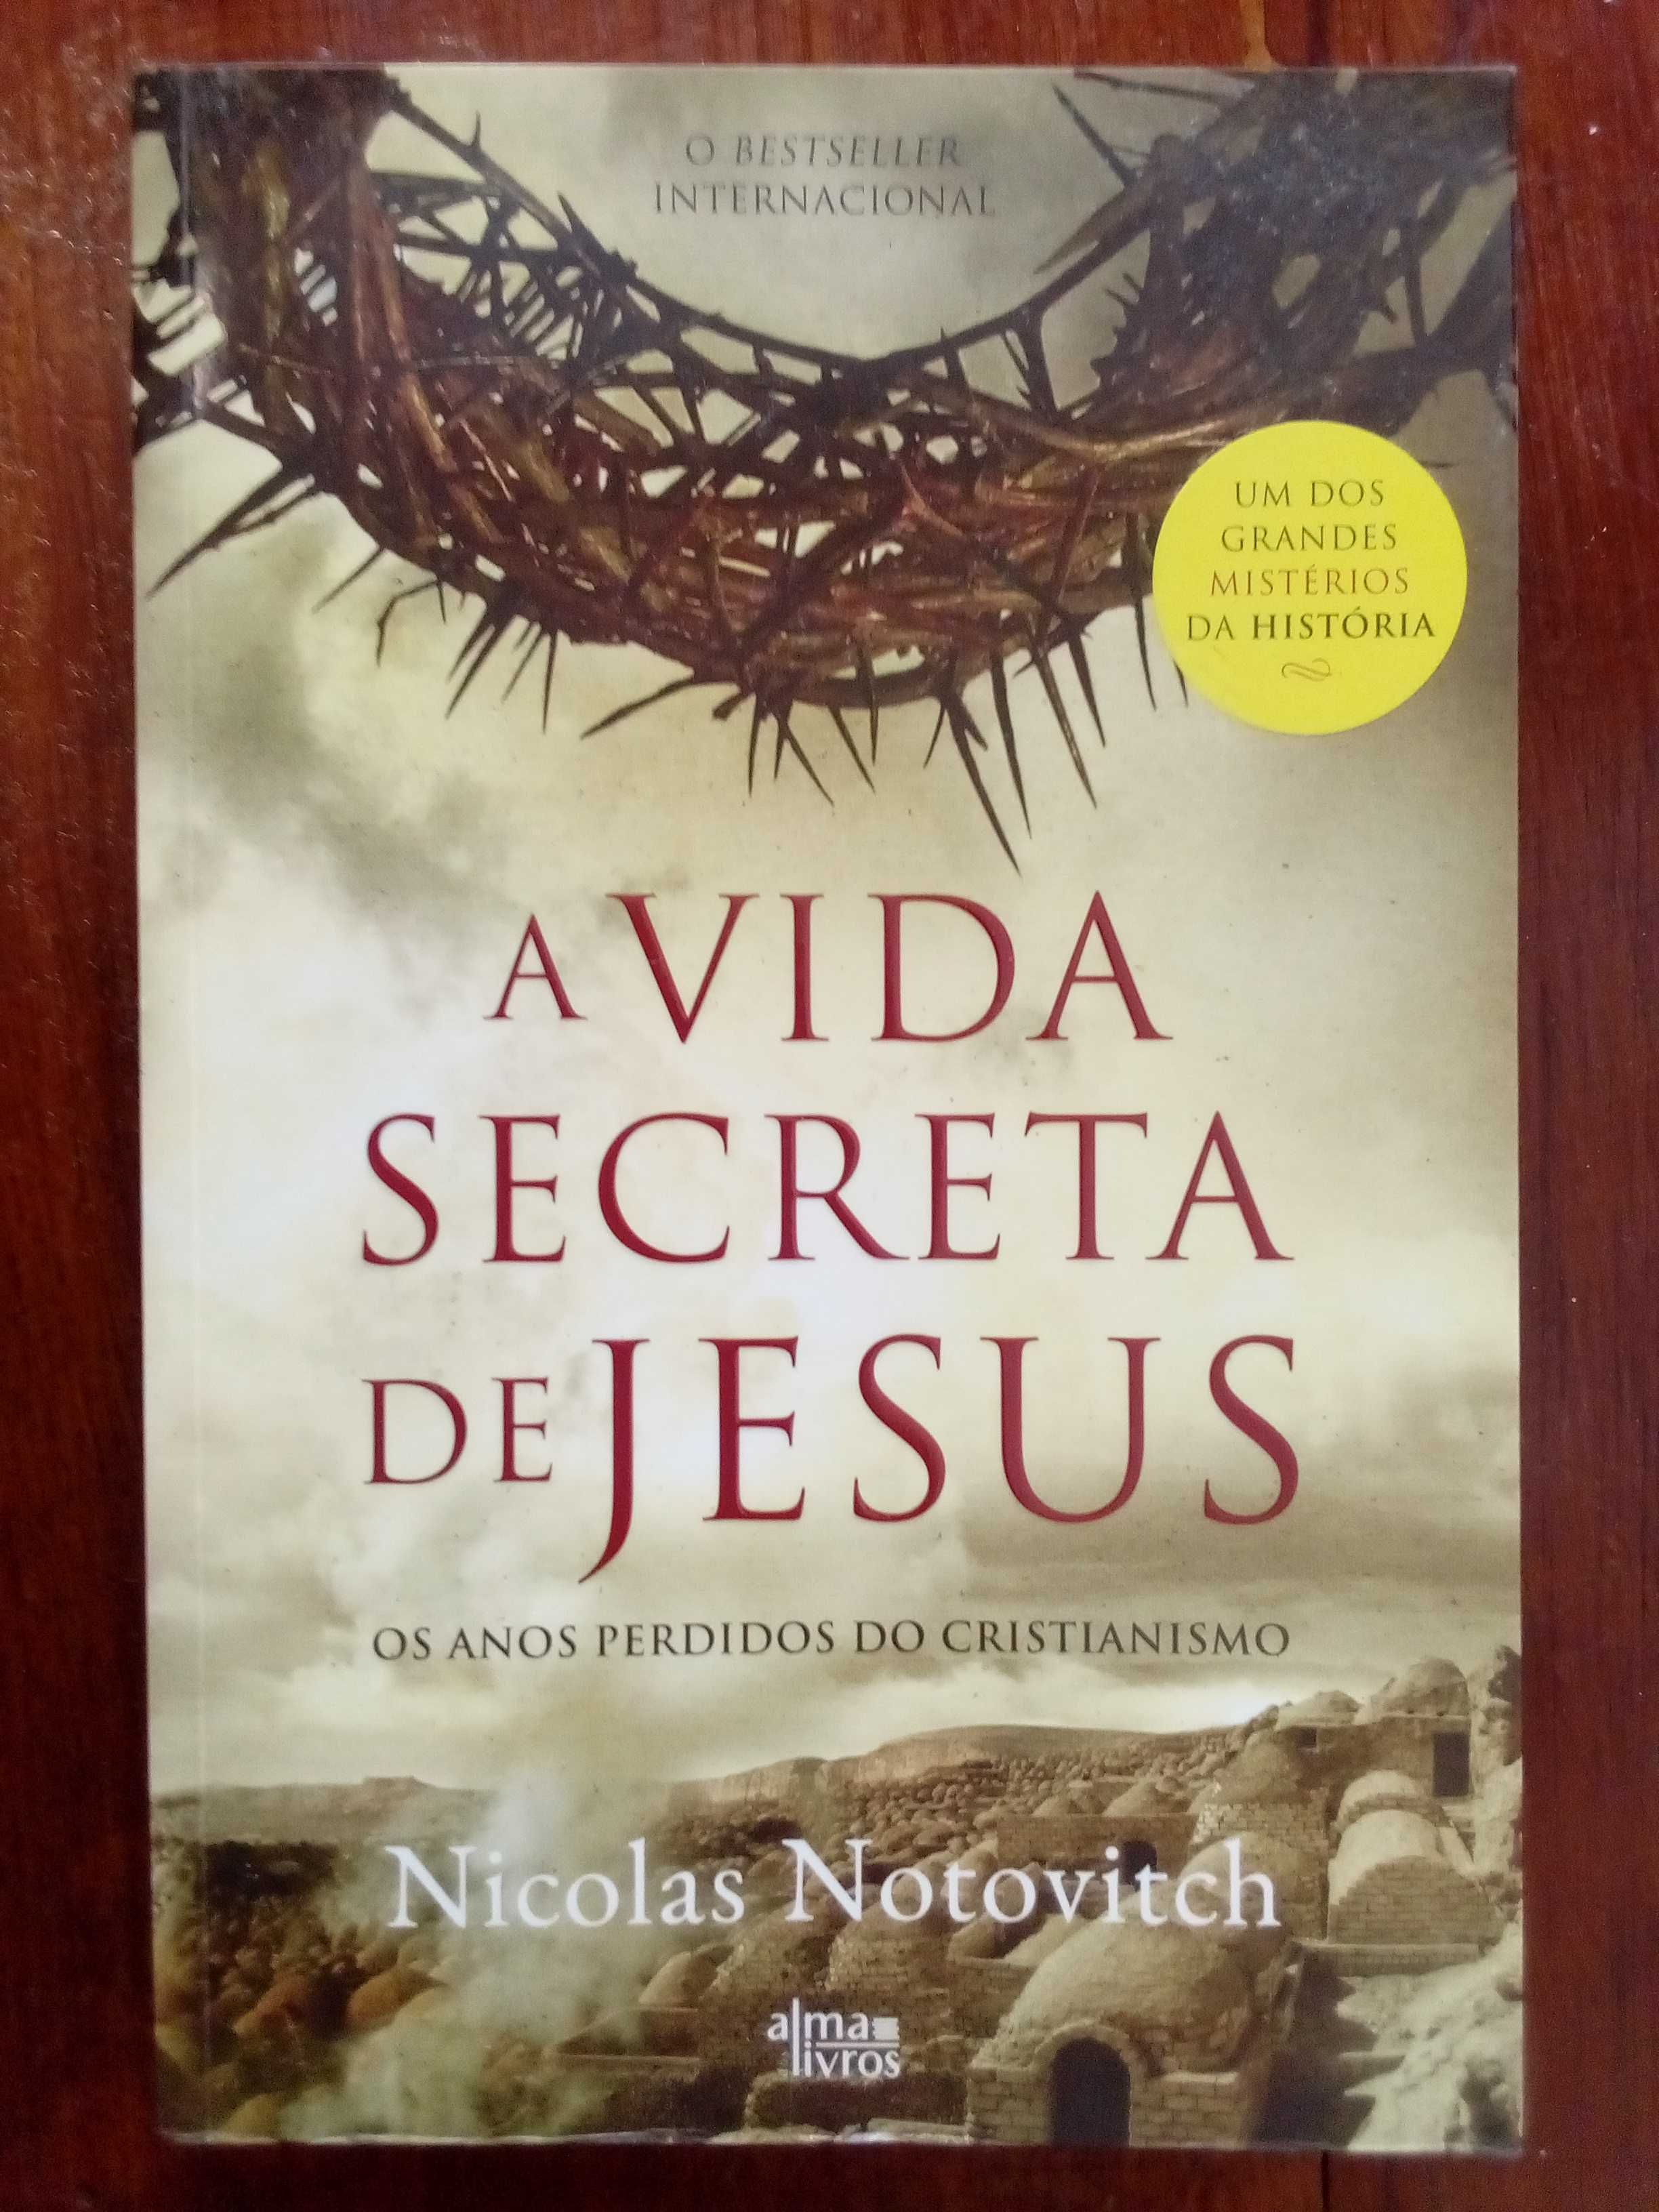 Nicolas Notovitch - A vida secreta de Jesus